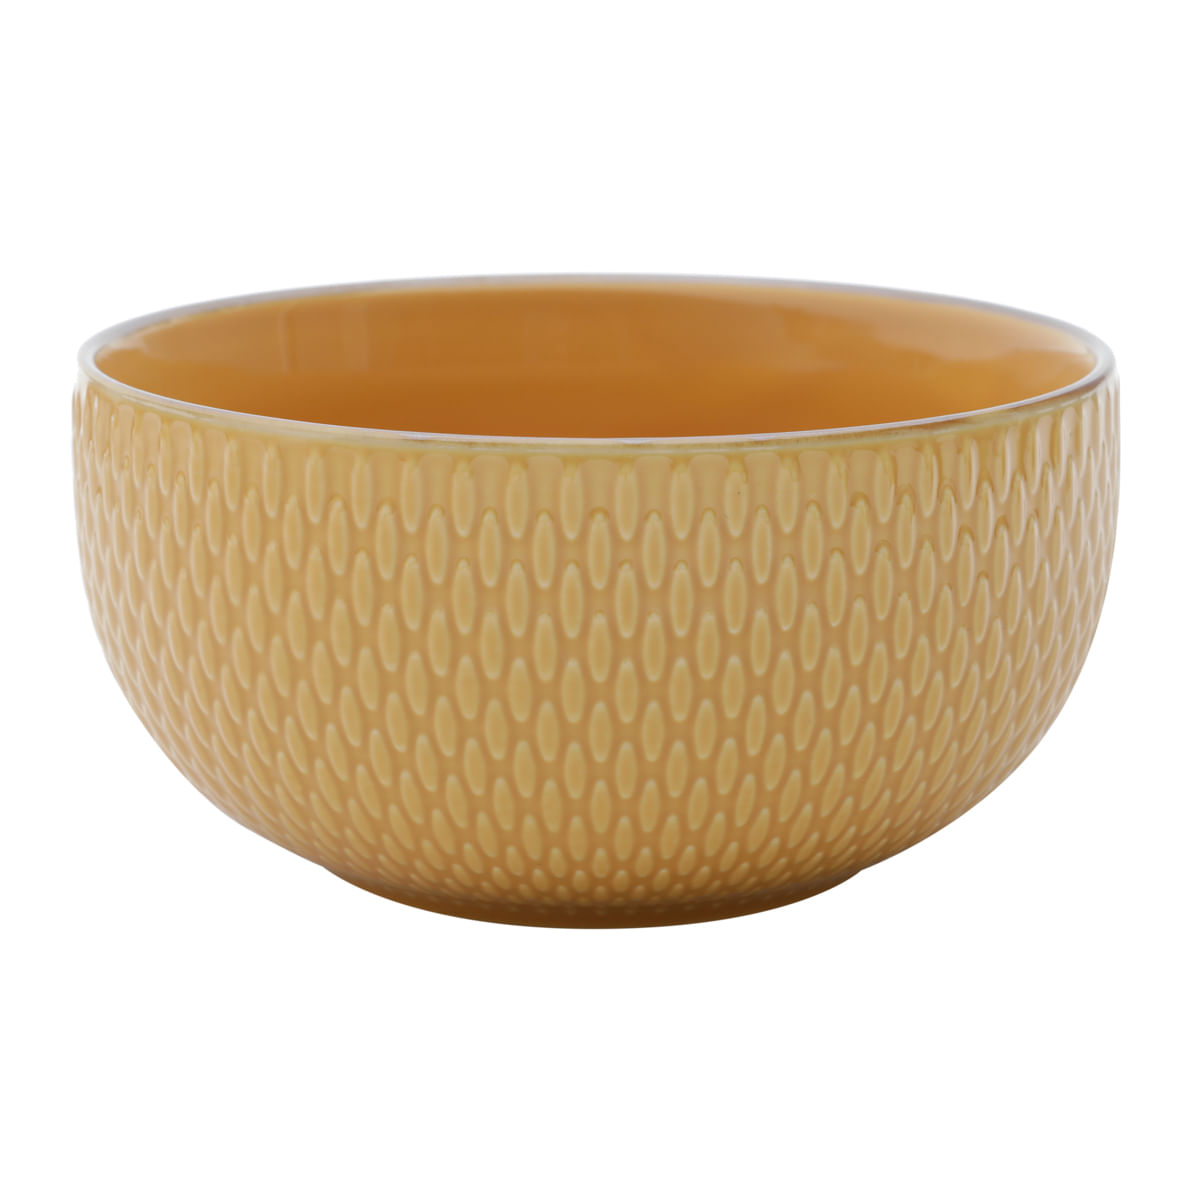 Bowl Porcelana Drops Amarelo com Detalhe Metalizado - 700ml